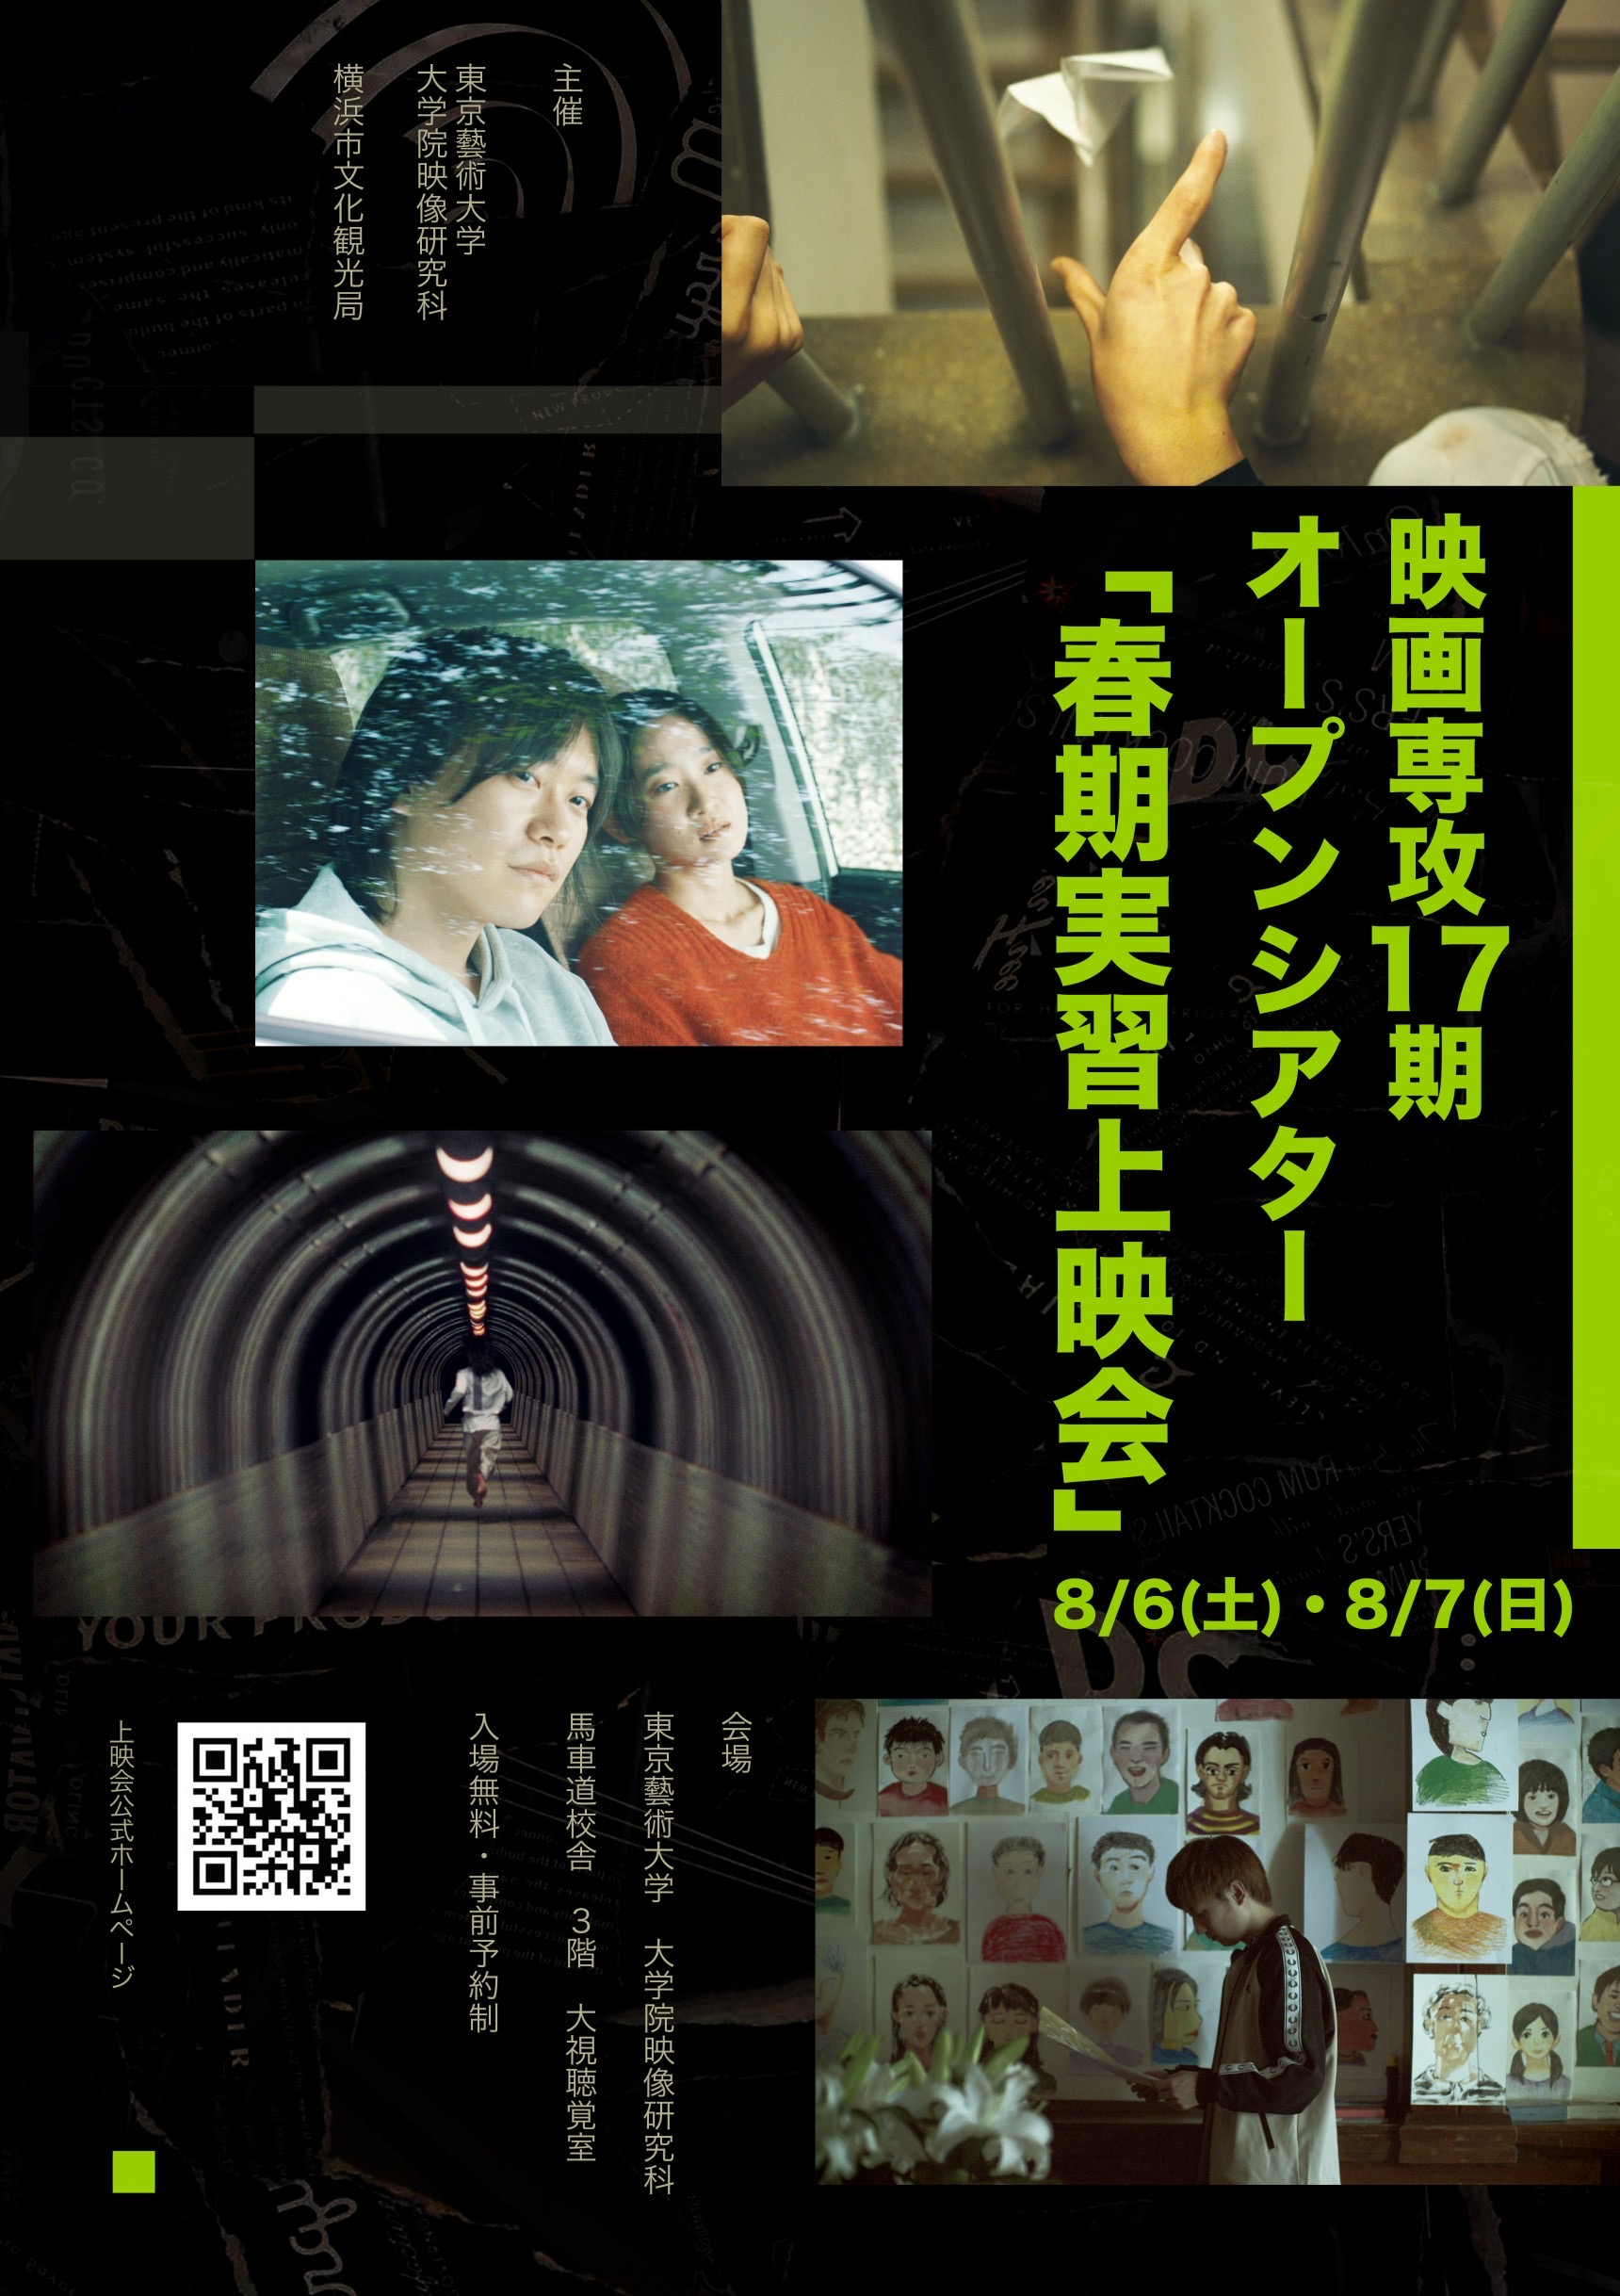 東京藝術大学大学院映像研究科 第二期生修了作品集 2008 - 日本映画